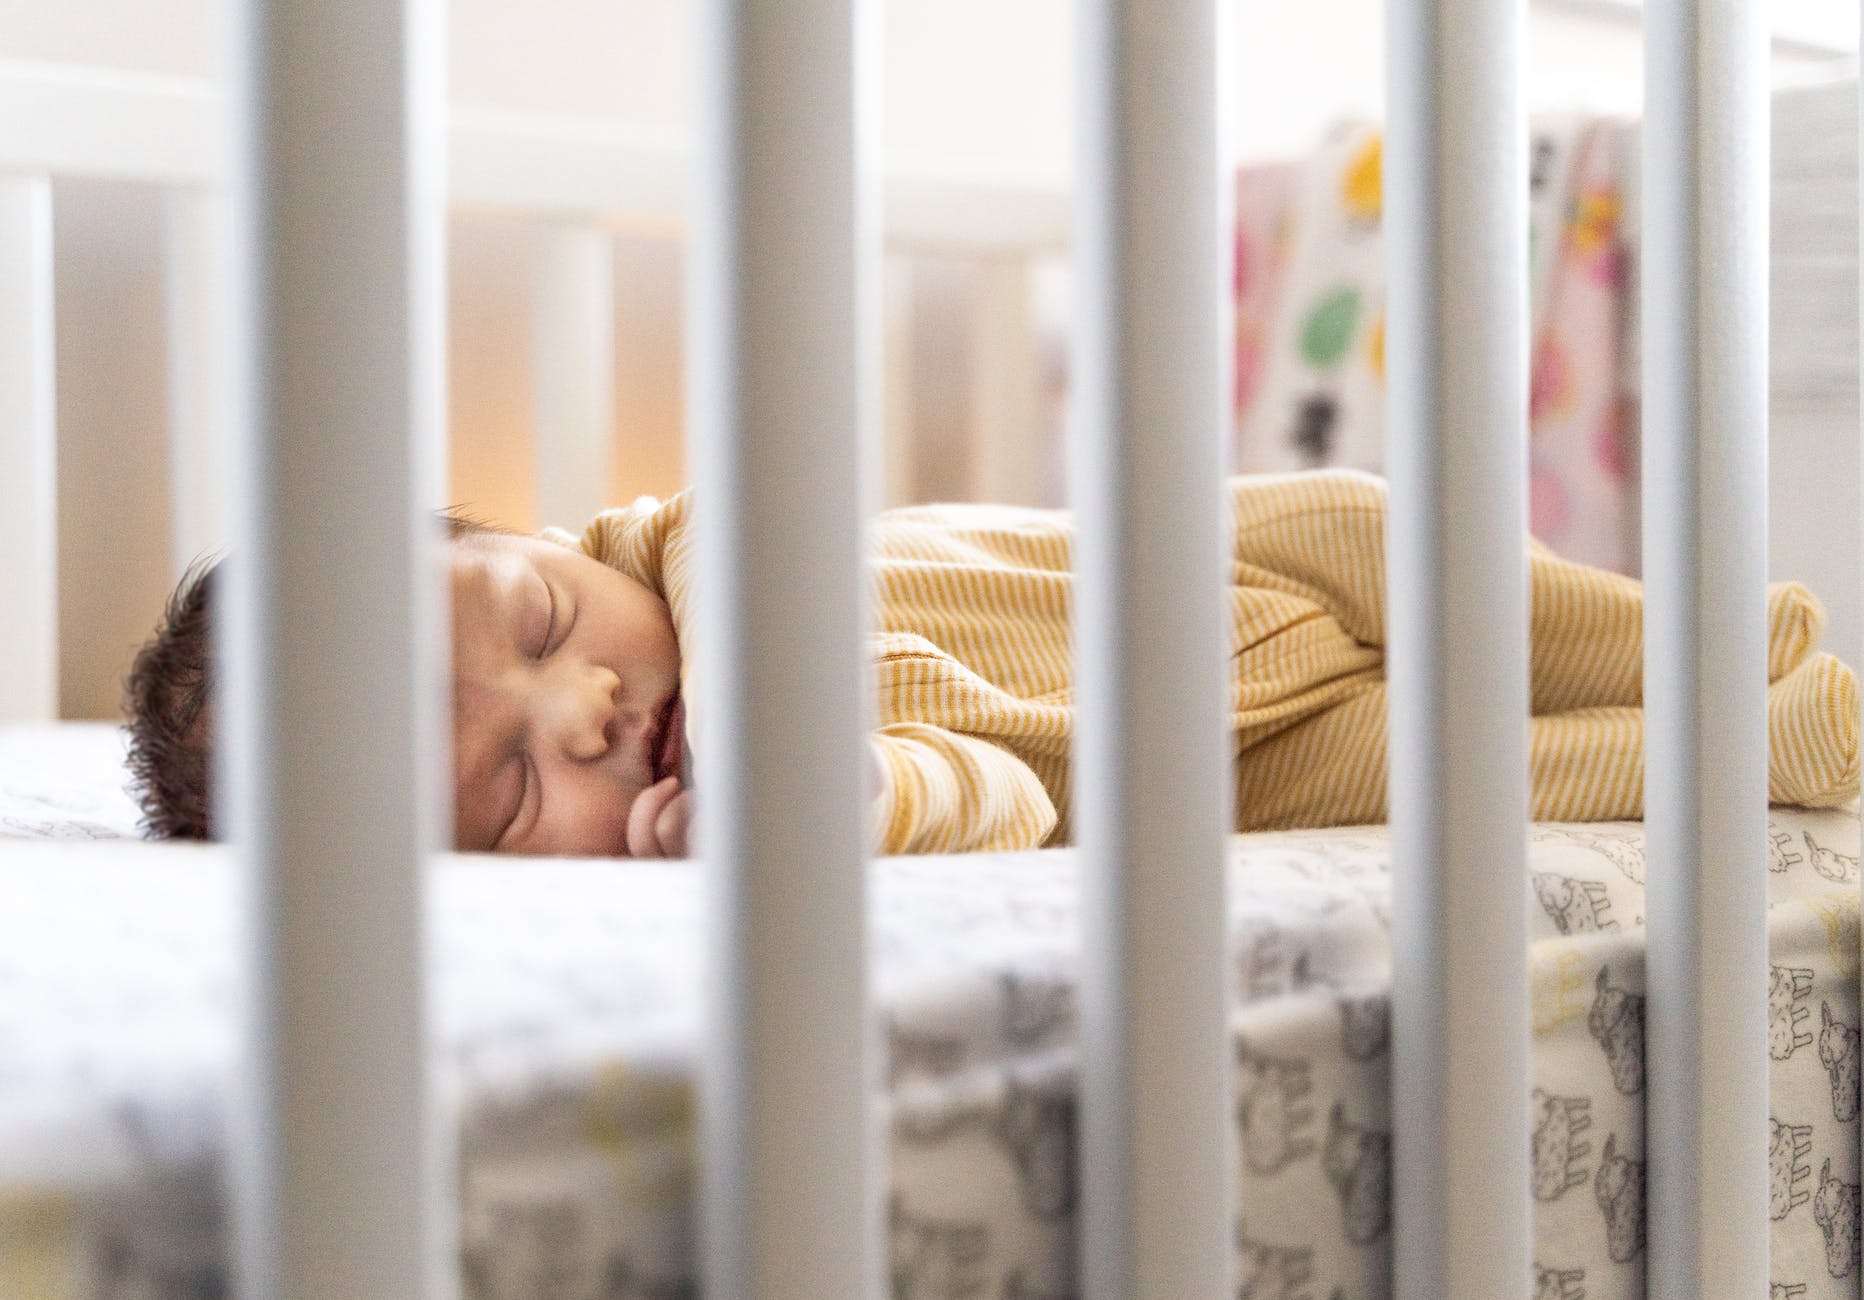 Γονείς, να θυμάστε: Τα μωρά σας πρέπει να κοιμούνται ανάσκελα και να παίζουν μπρούμυτα